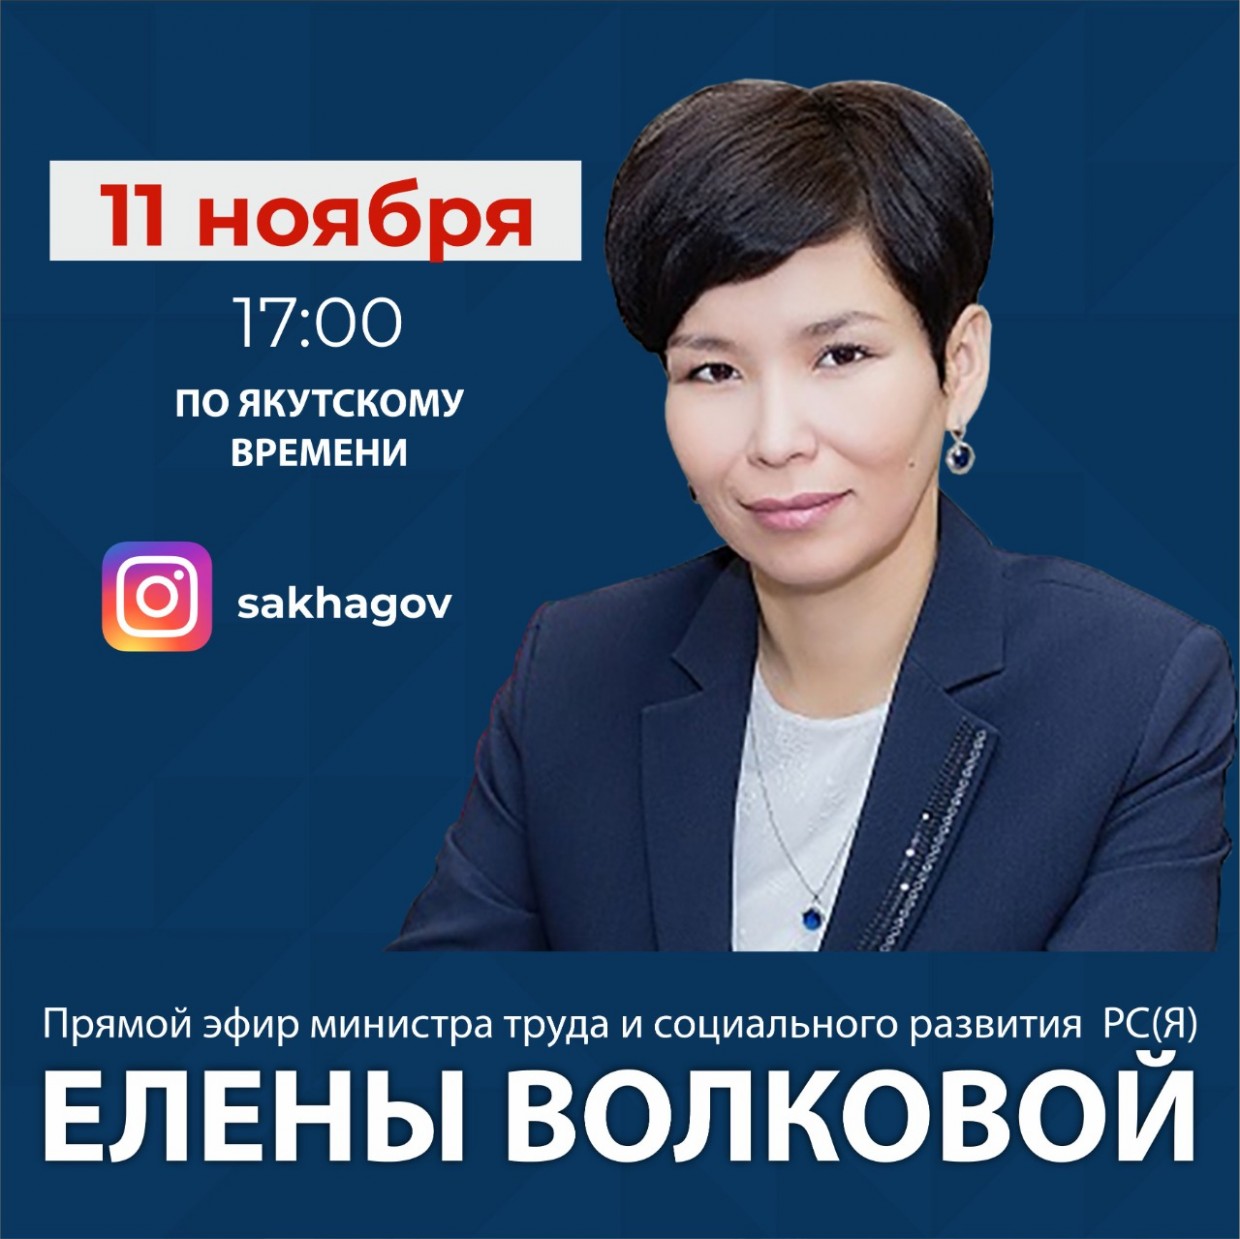 Министр труда и социального развития Якутии Елена Волкова проведёт прямой эфир в соцсетях